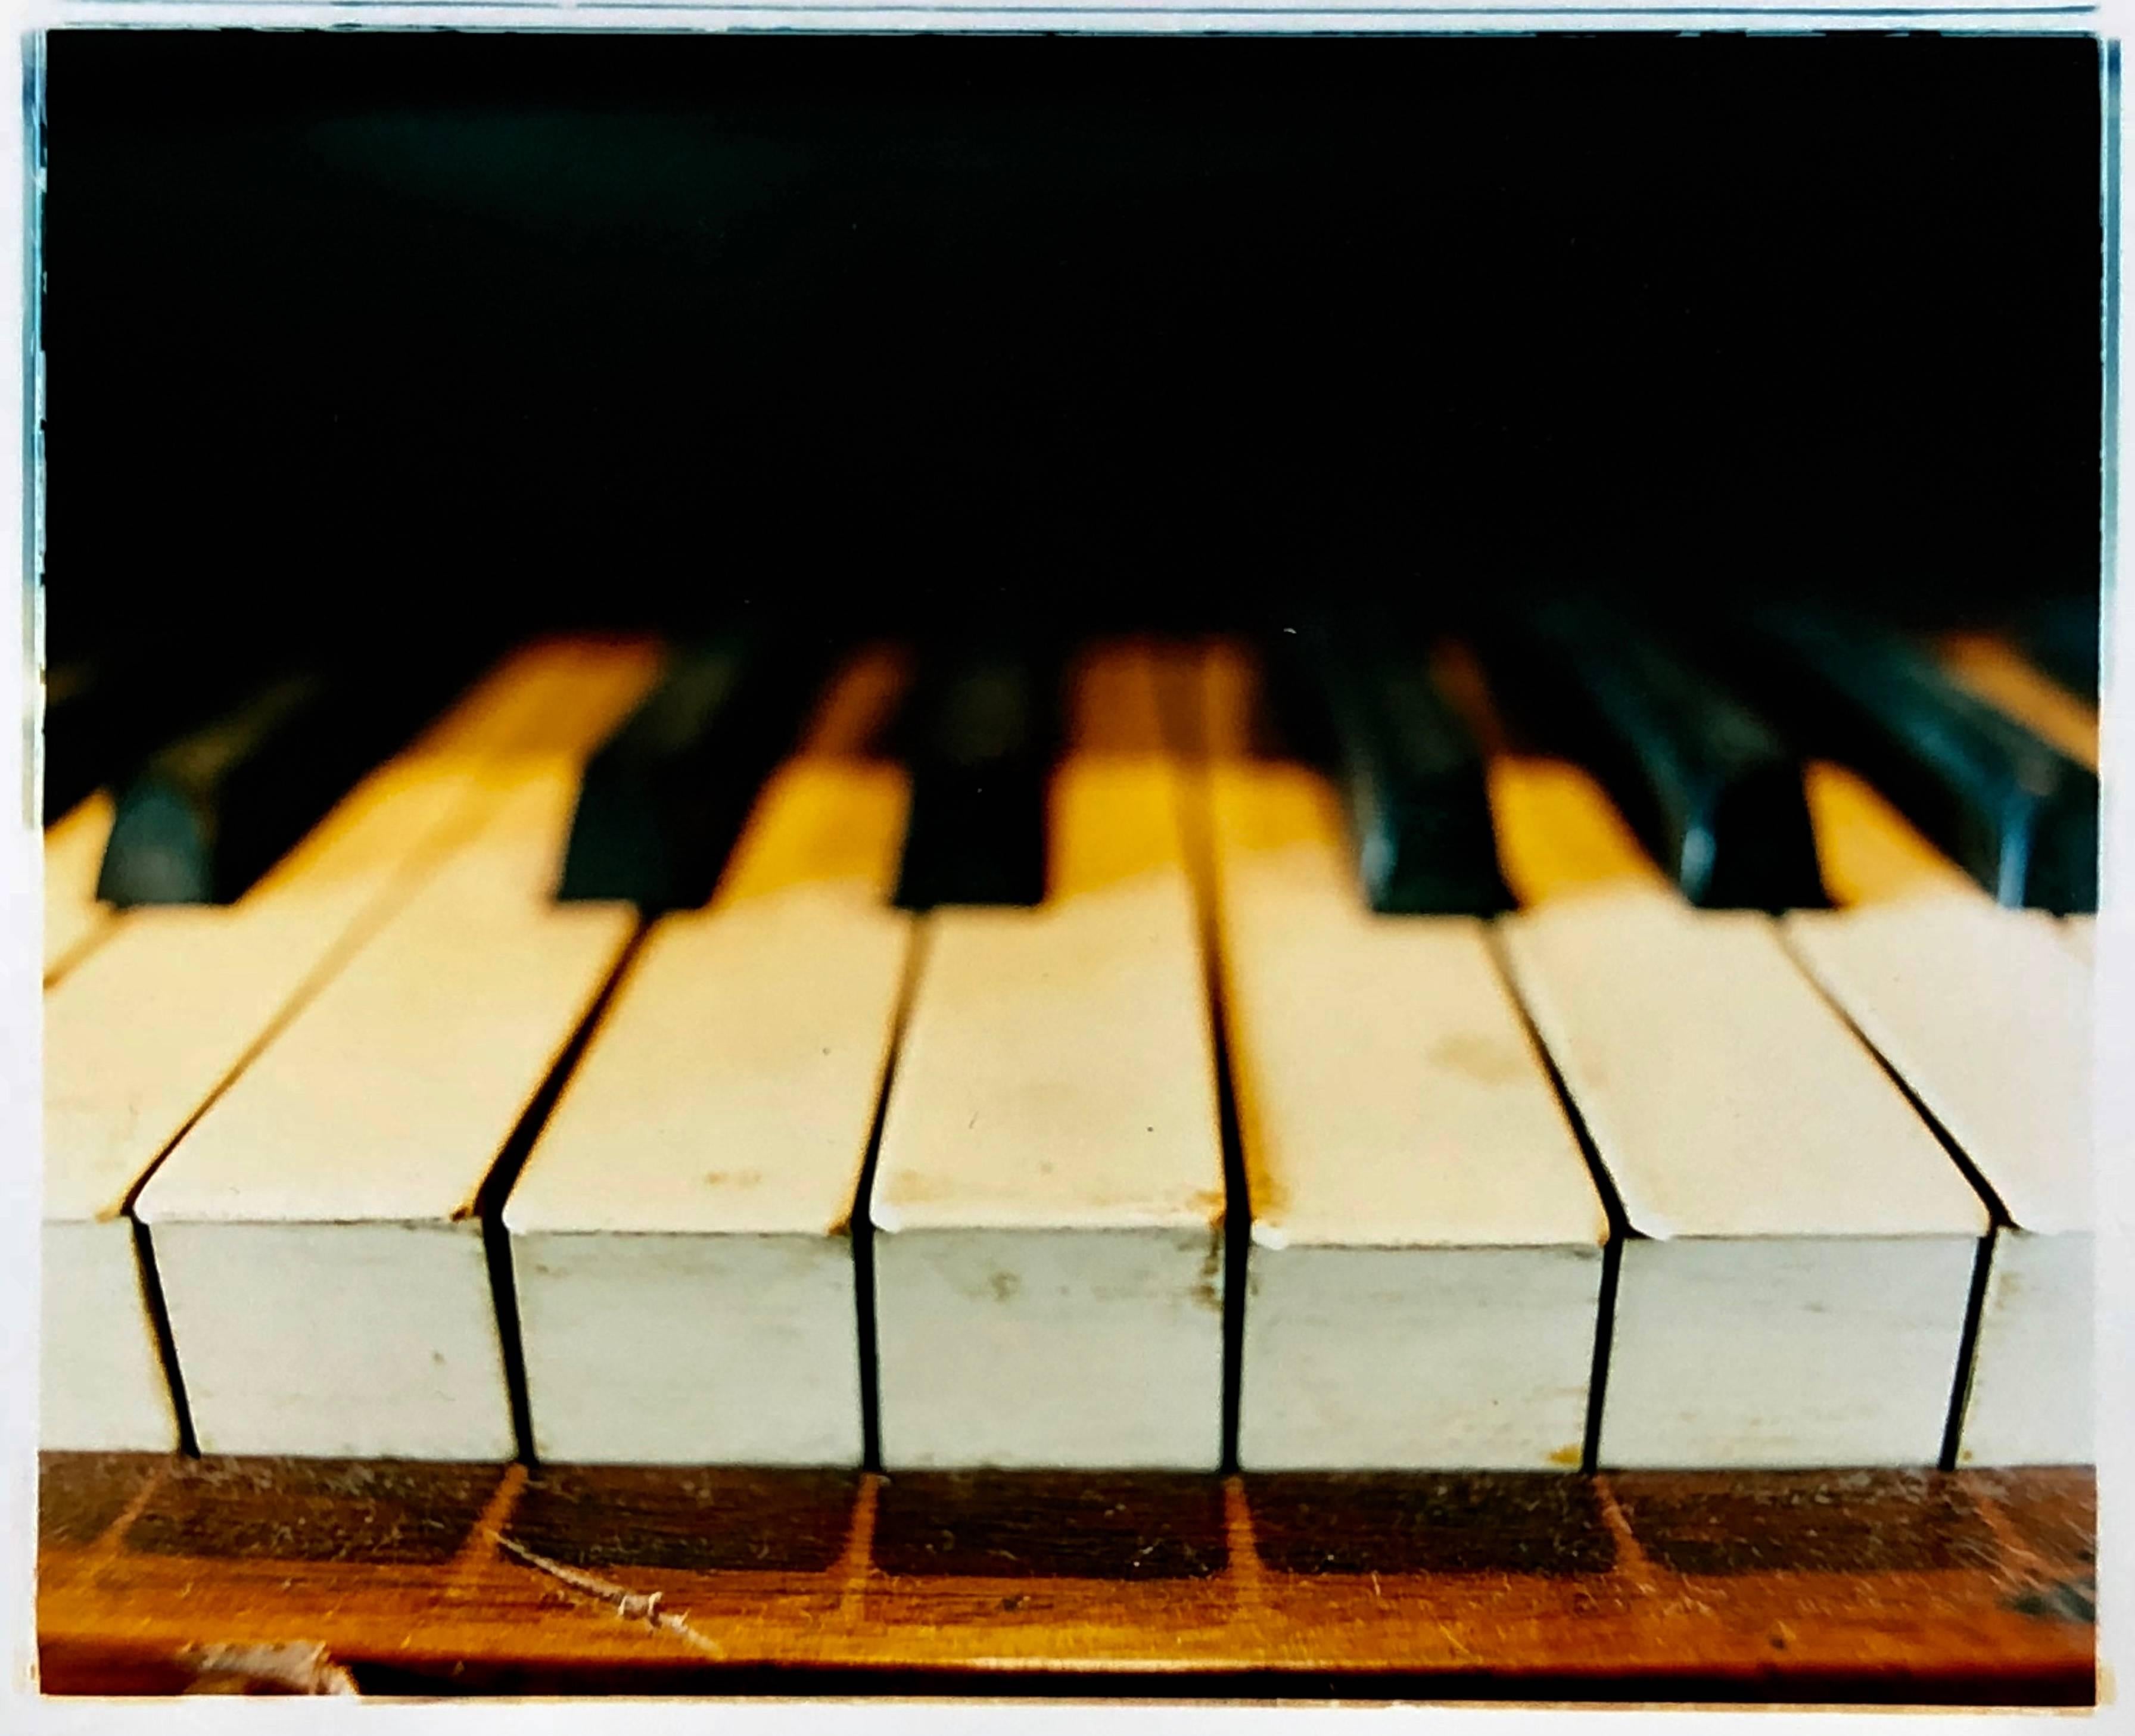 Klavierschlüssel, Stockton-on-Tees - Musikfarbenfotografie